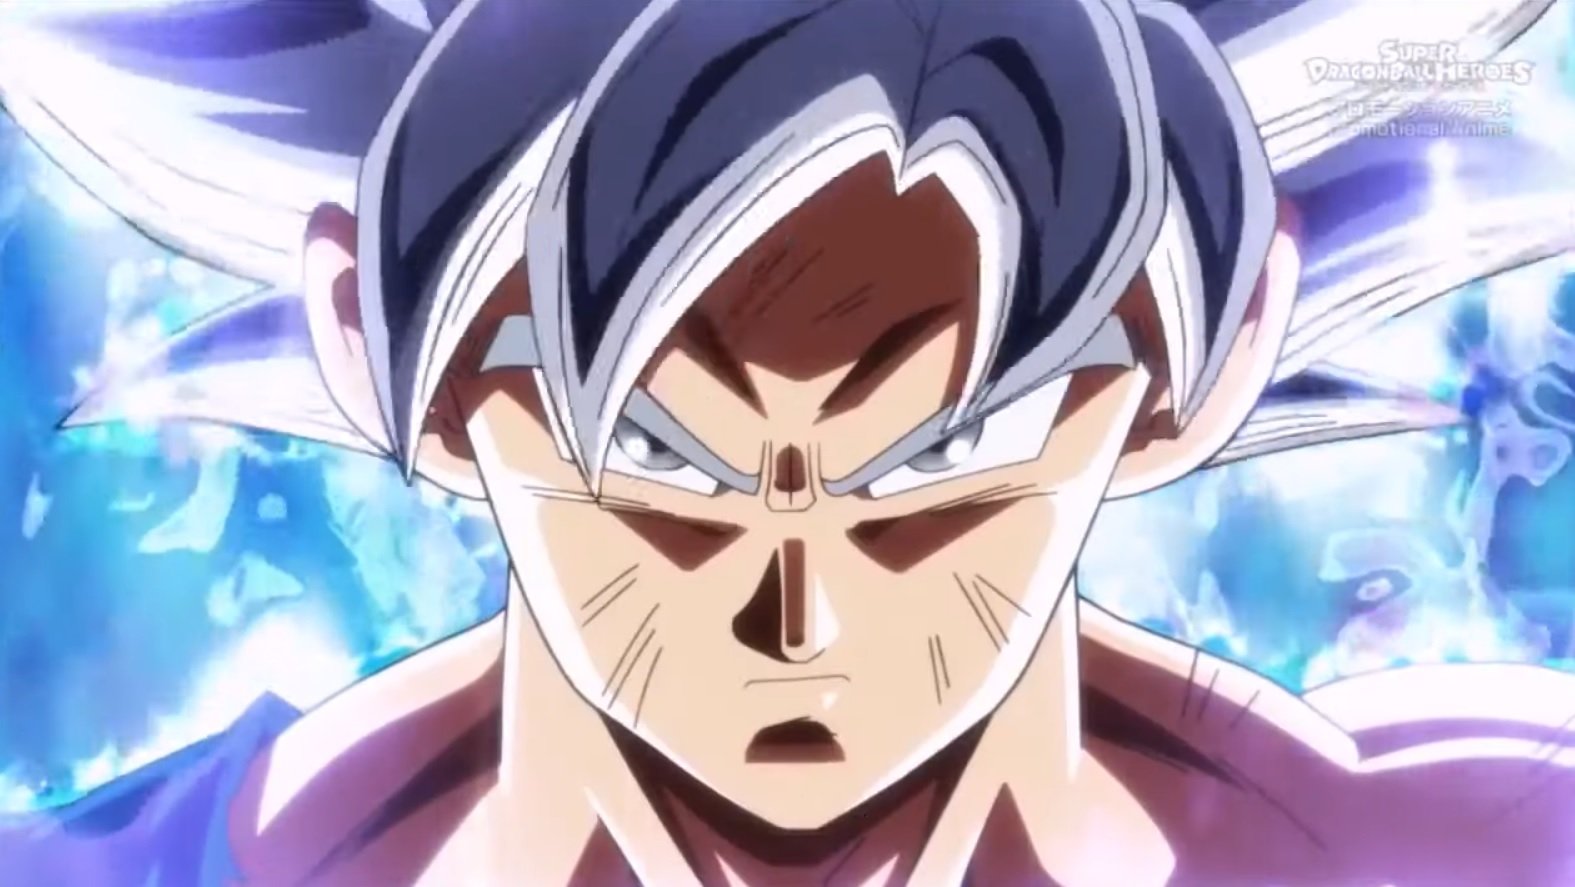 Evolução e transformações de Goku são tema de novo álbum de figurinhas de Dragon  Ball